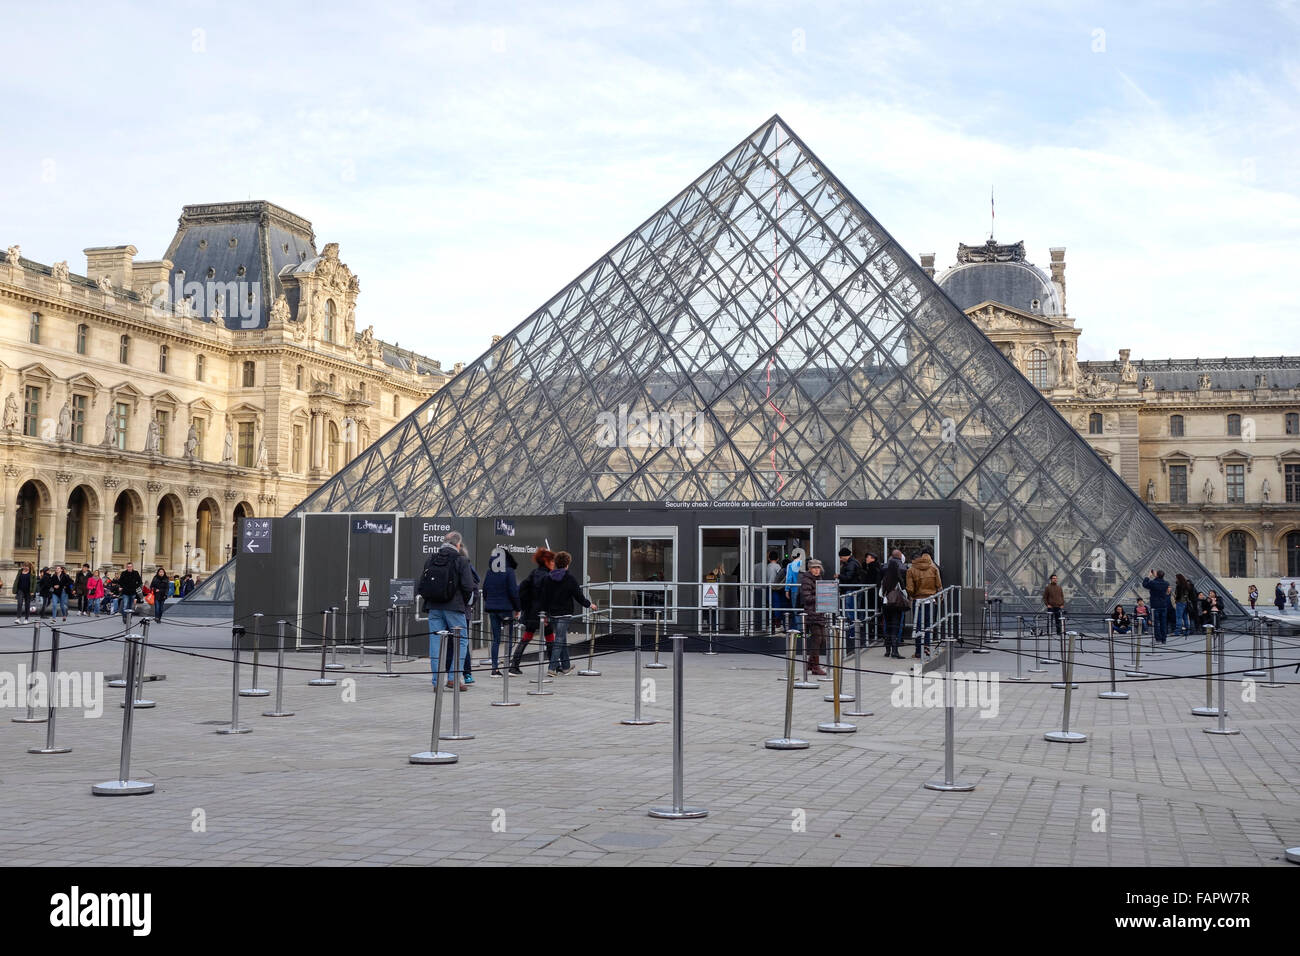 Entrée du musée du Louvre avec cabines de contrôle de sécurité après les attaques terroristes et les Paris Palace avec pyramide dans Paris, France. Banque D'Images